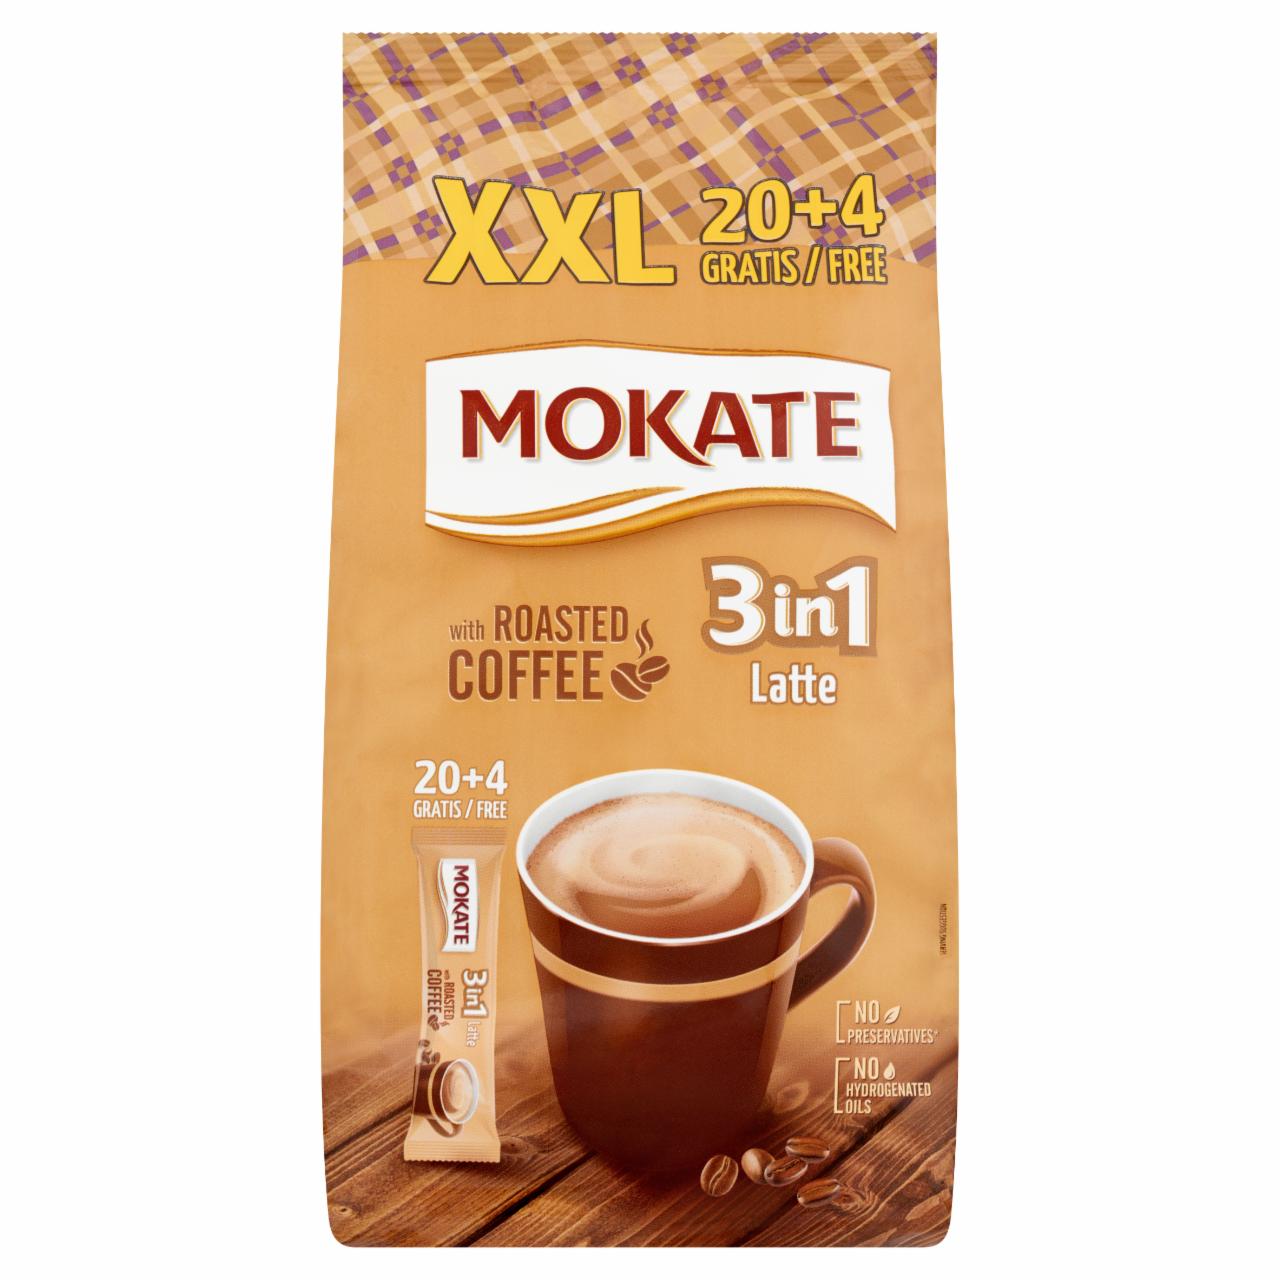 Képek - Mokate 3in1 Latte azonnal oldódó kávéspecialitás 24 x 15 g (360 g)